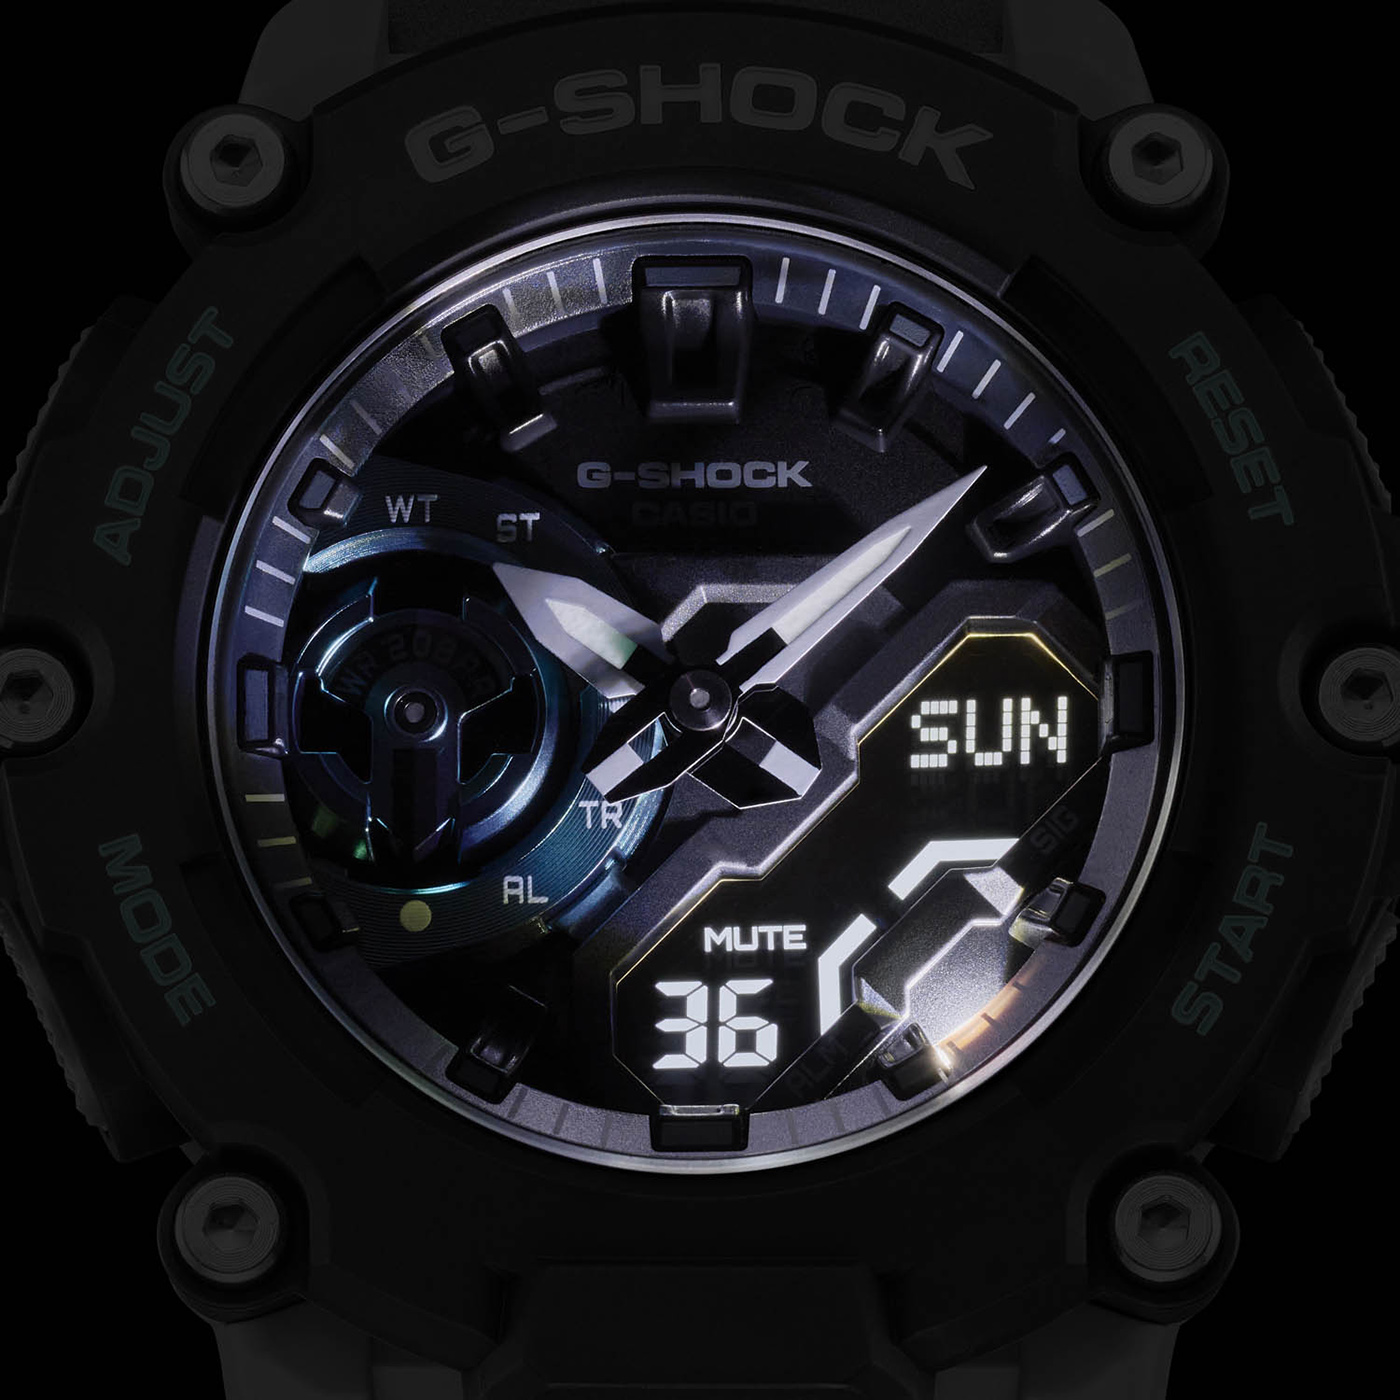 muis Waakzaamheid Gehoorzaam Casio Announces G-Shock GA2200 Watch Series | aBlogtoWatch